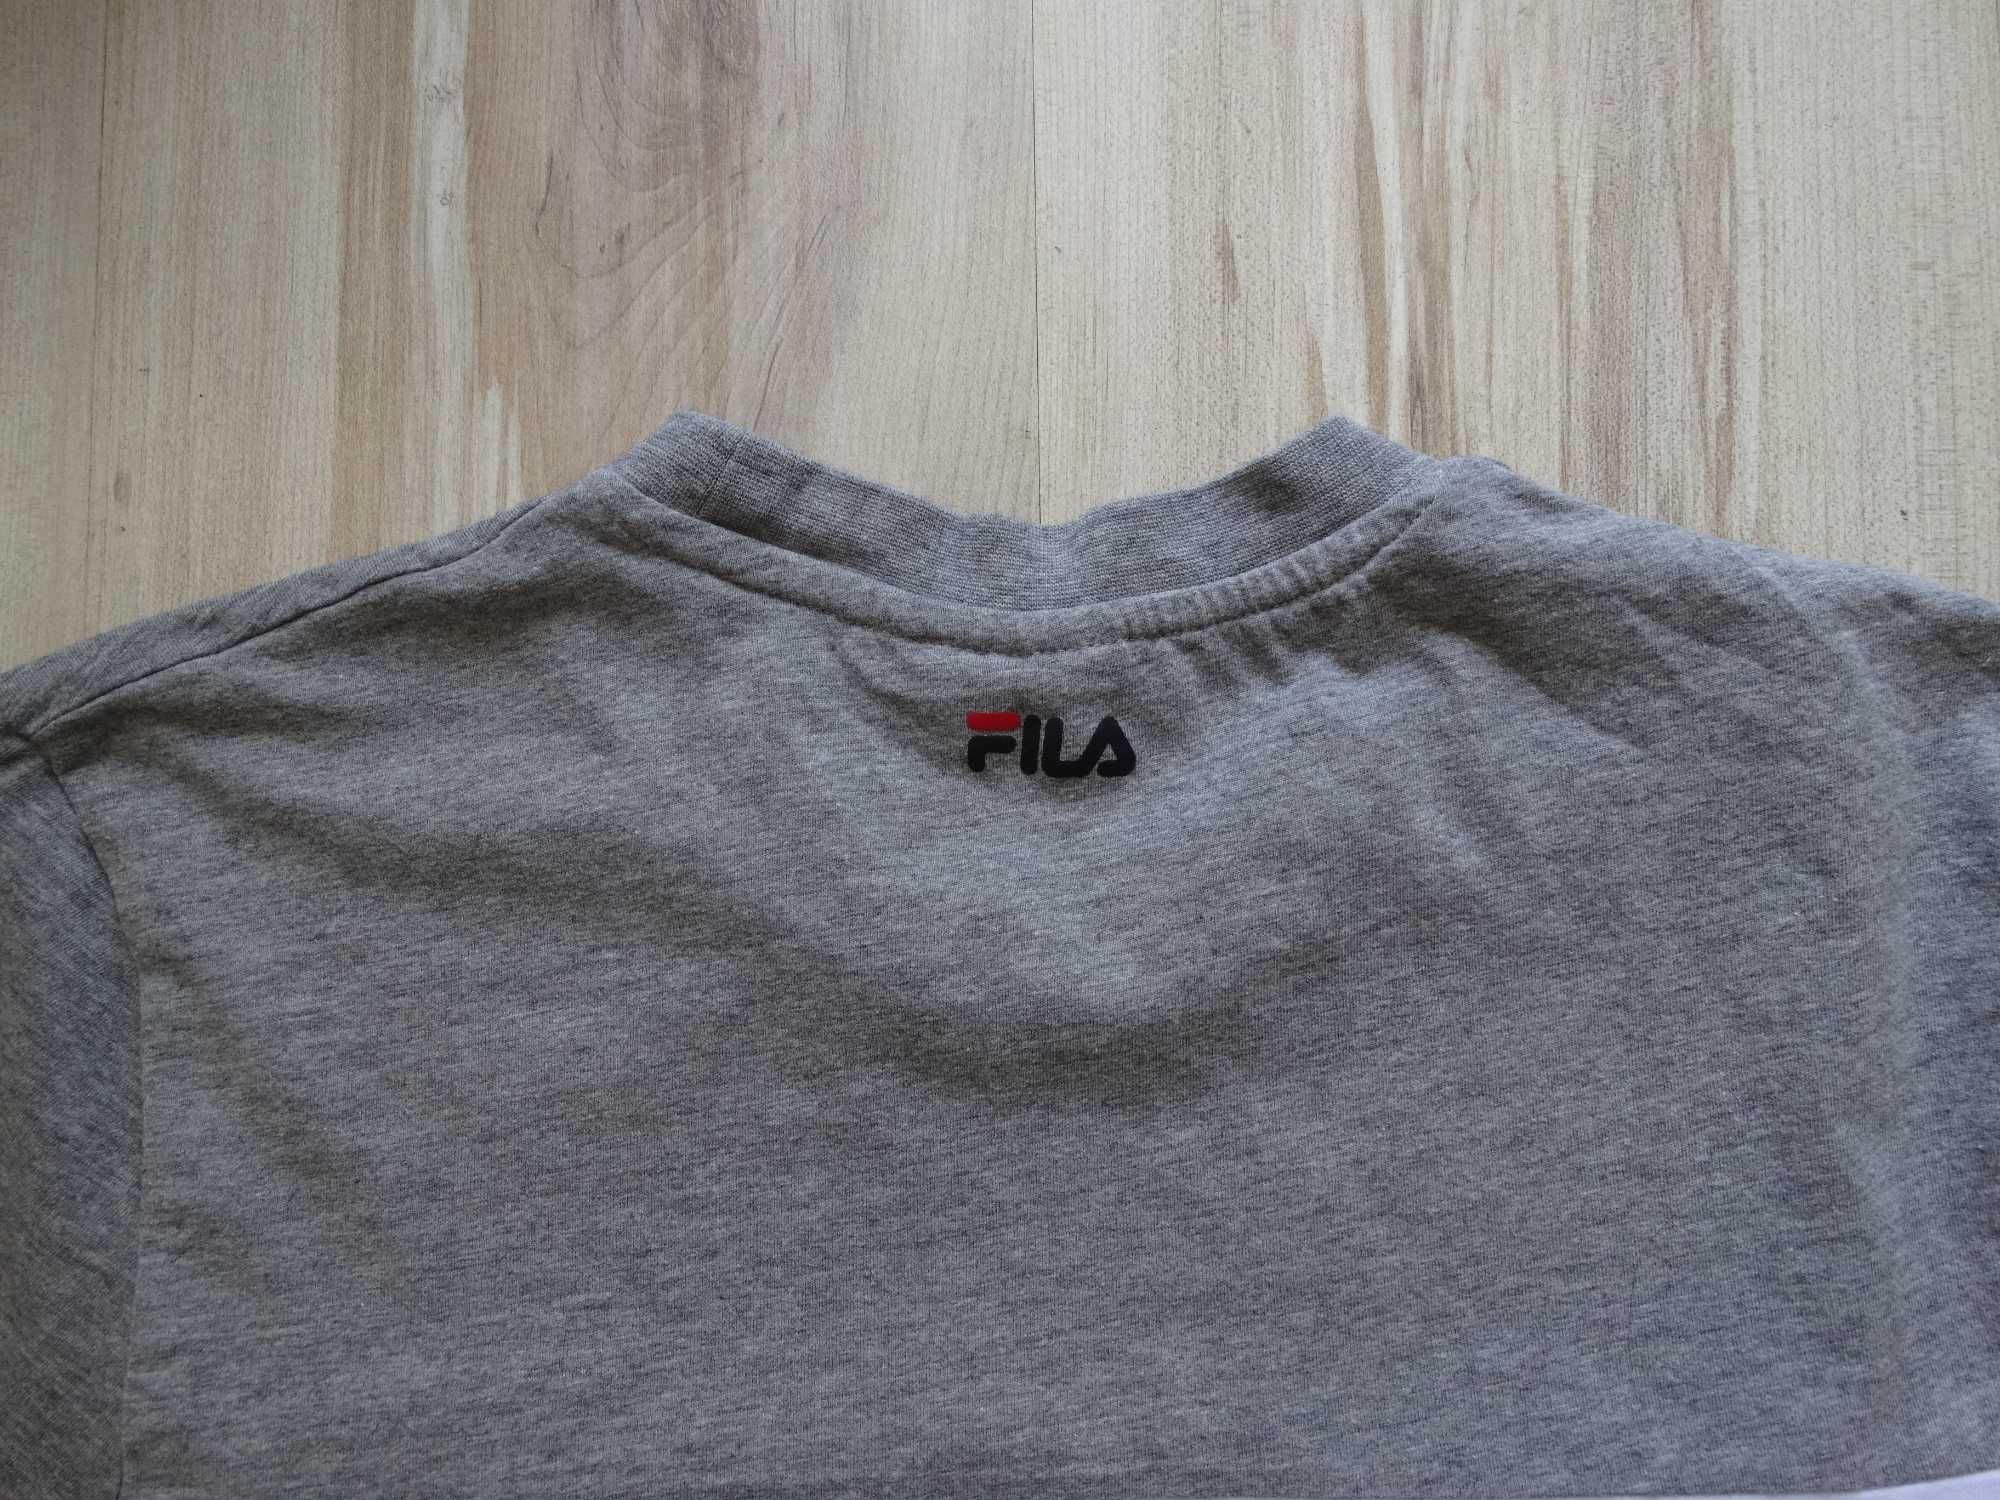 Фила Fila мъжка тениска размер S